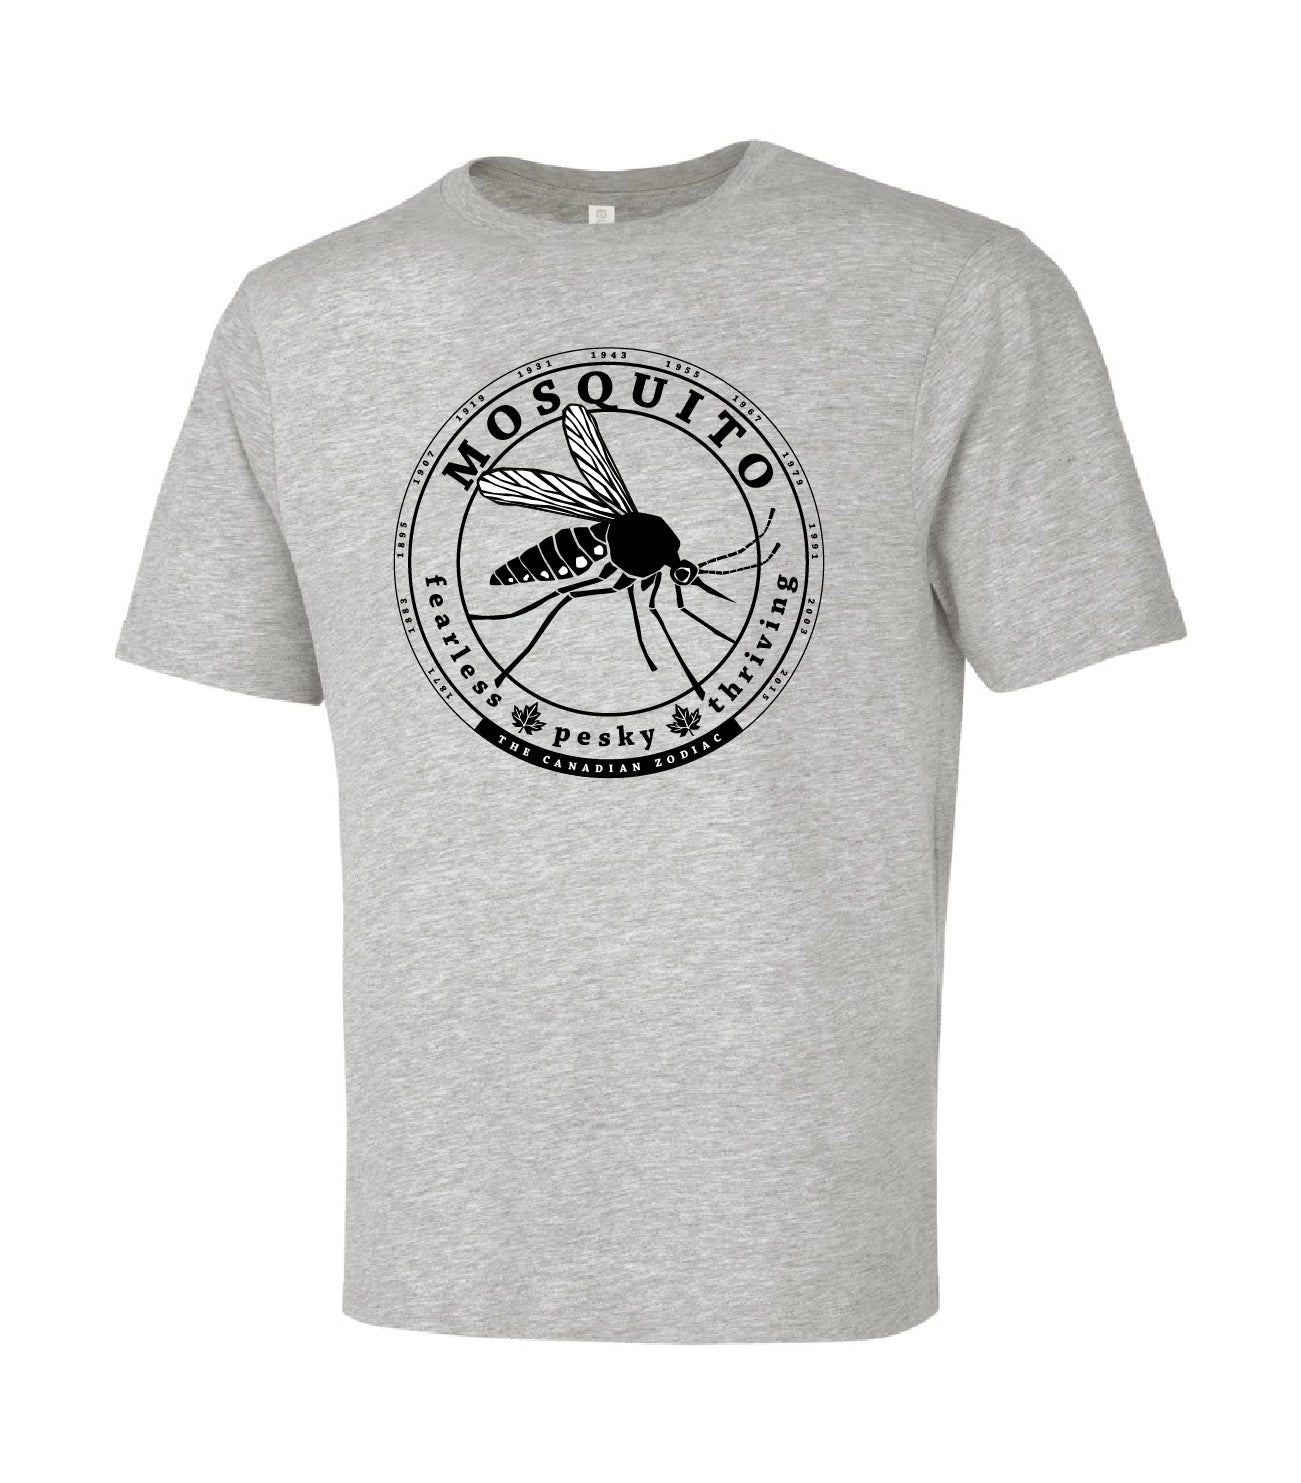 Mosquito T-shirt